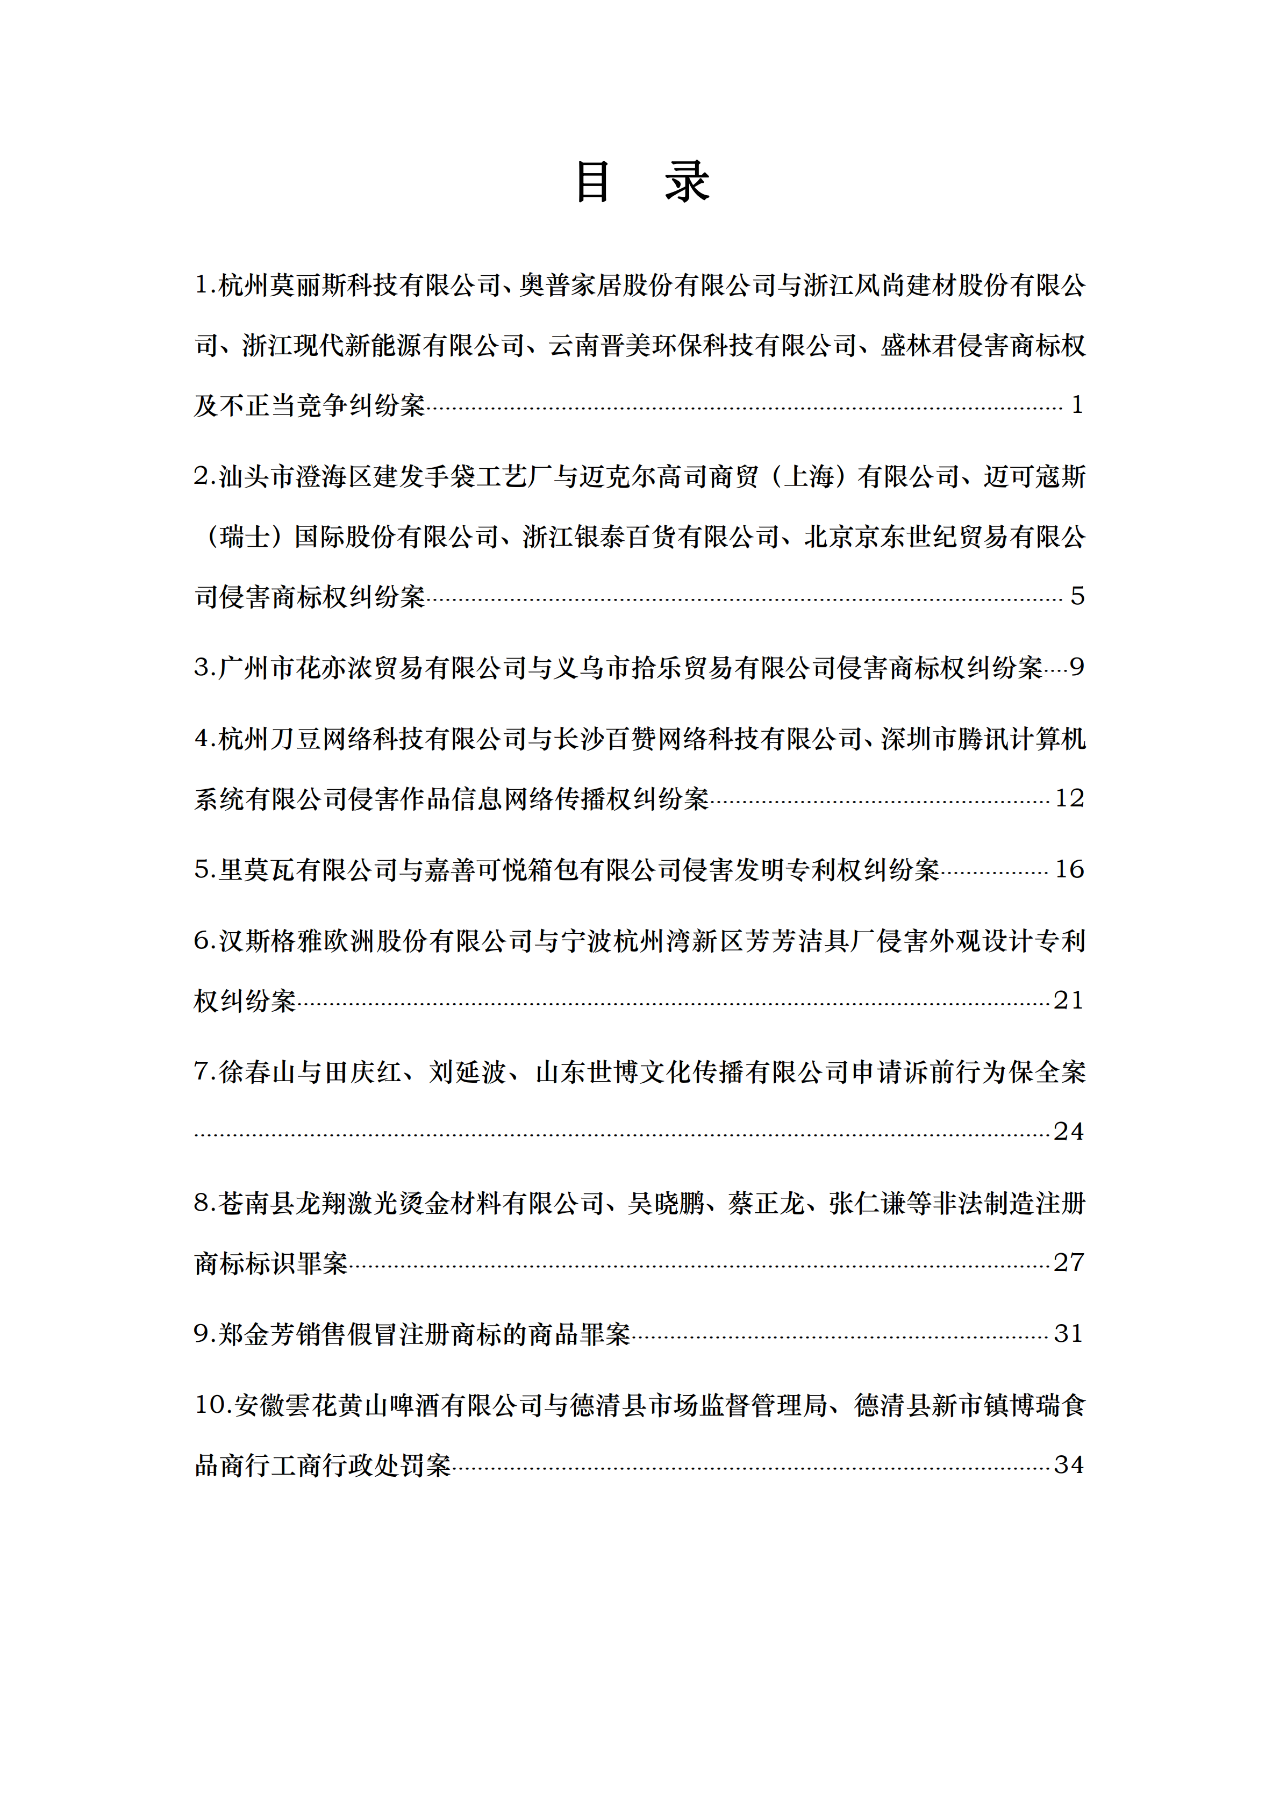 浙江法院发布2019年度十大知识产权案件